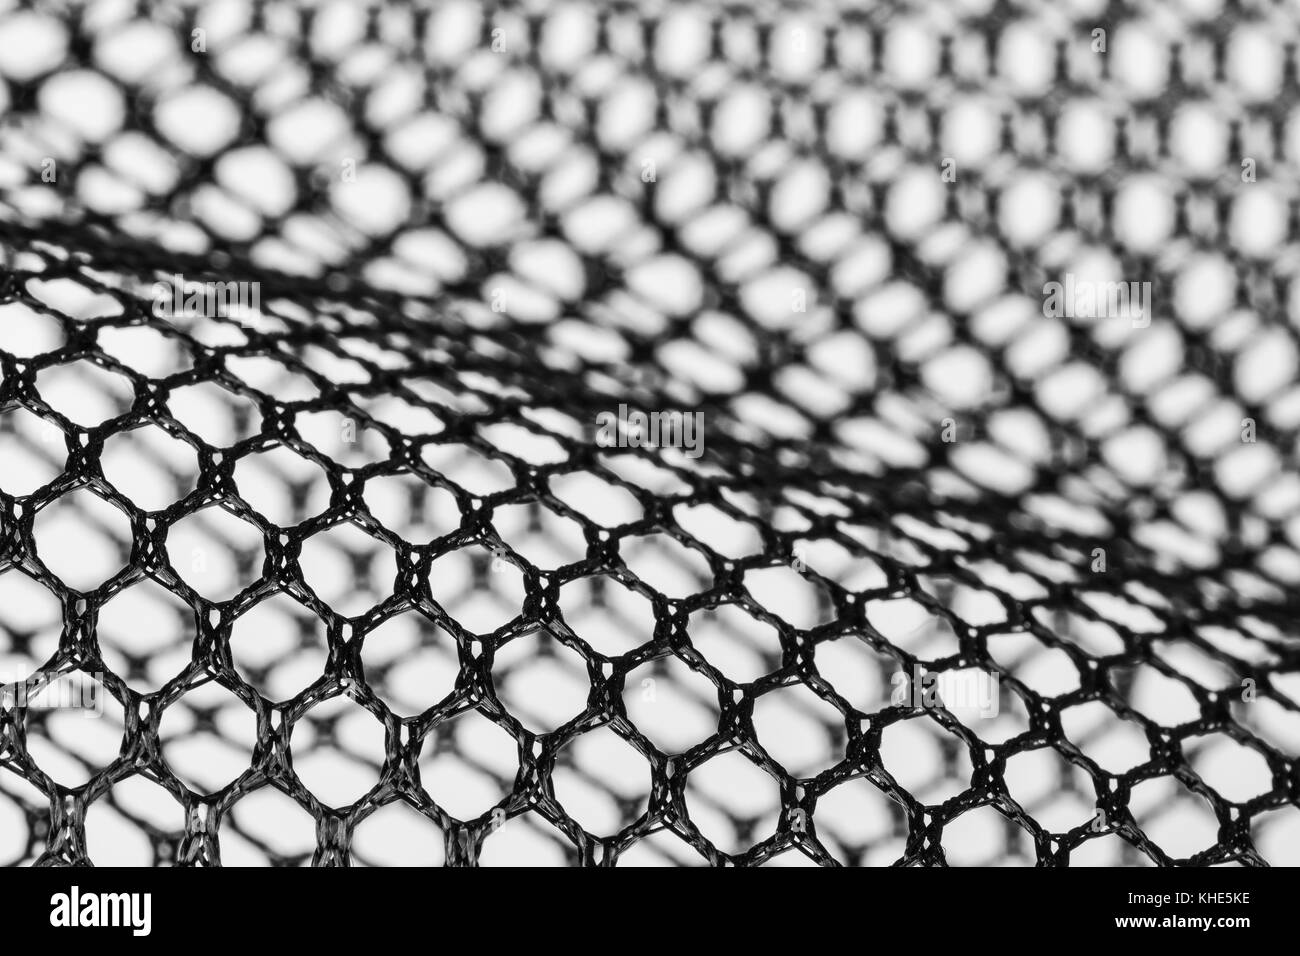 Abstract in bianco e nero texture da netting. dettaglio artistico di celle esagonali. concetto per la scienza, ricerca, tecnologia e industria. Foto Stock